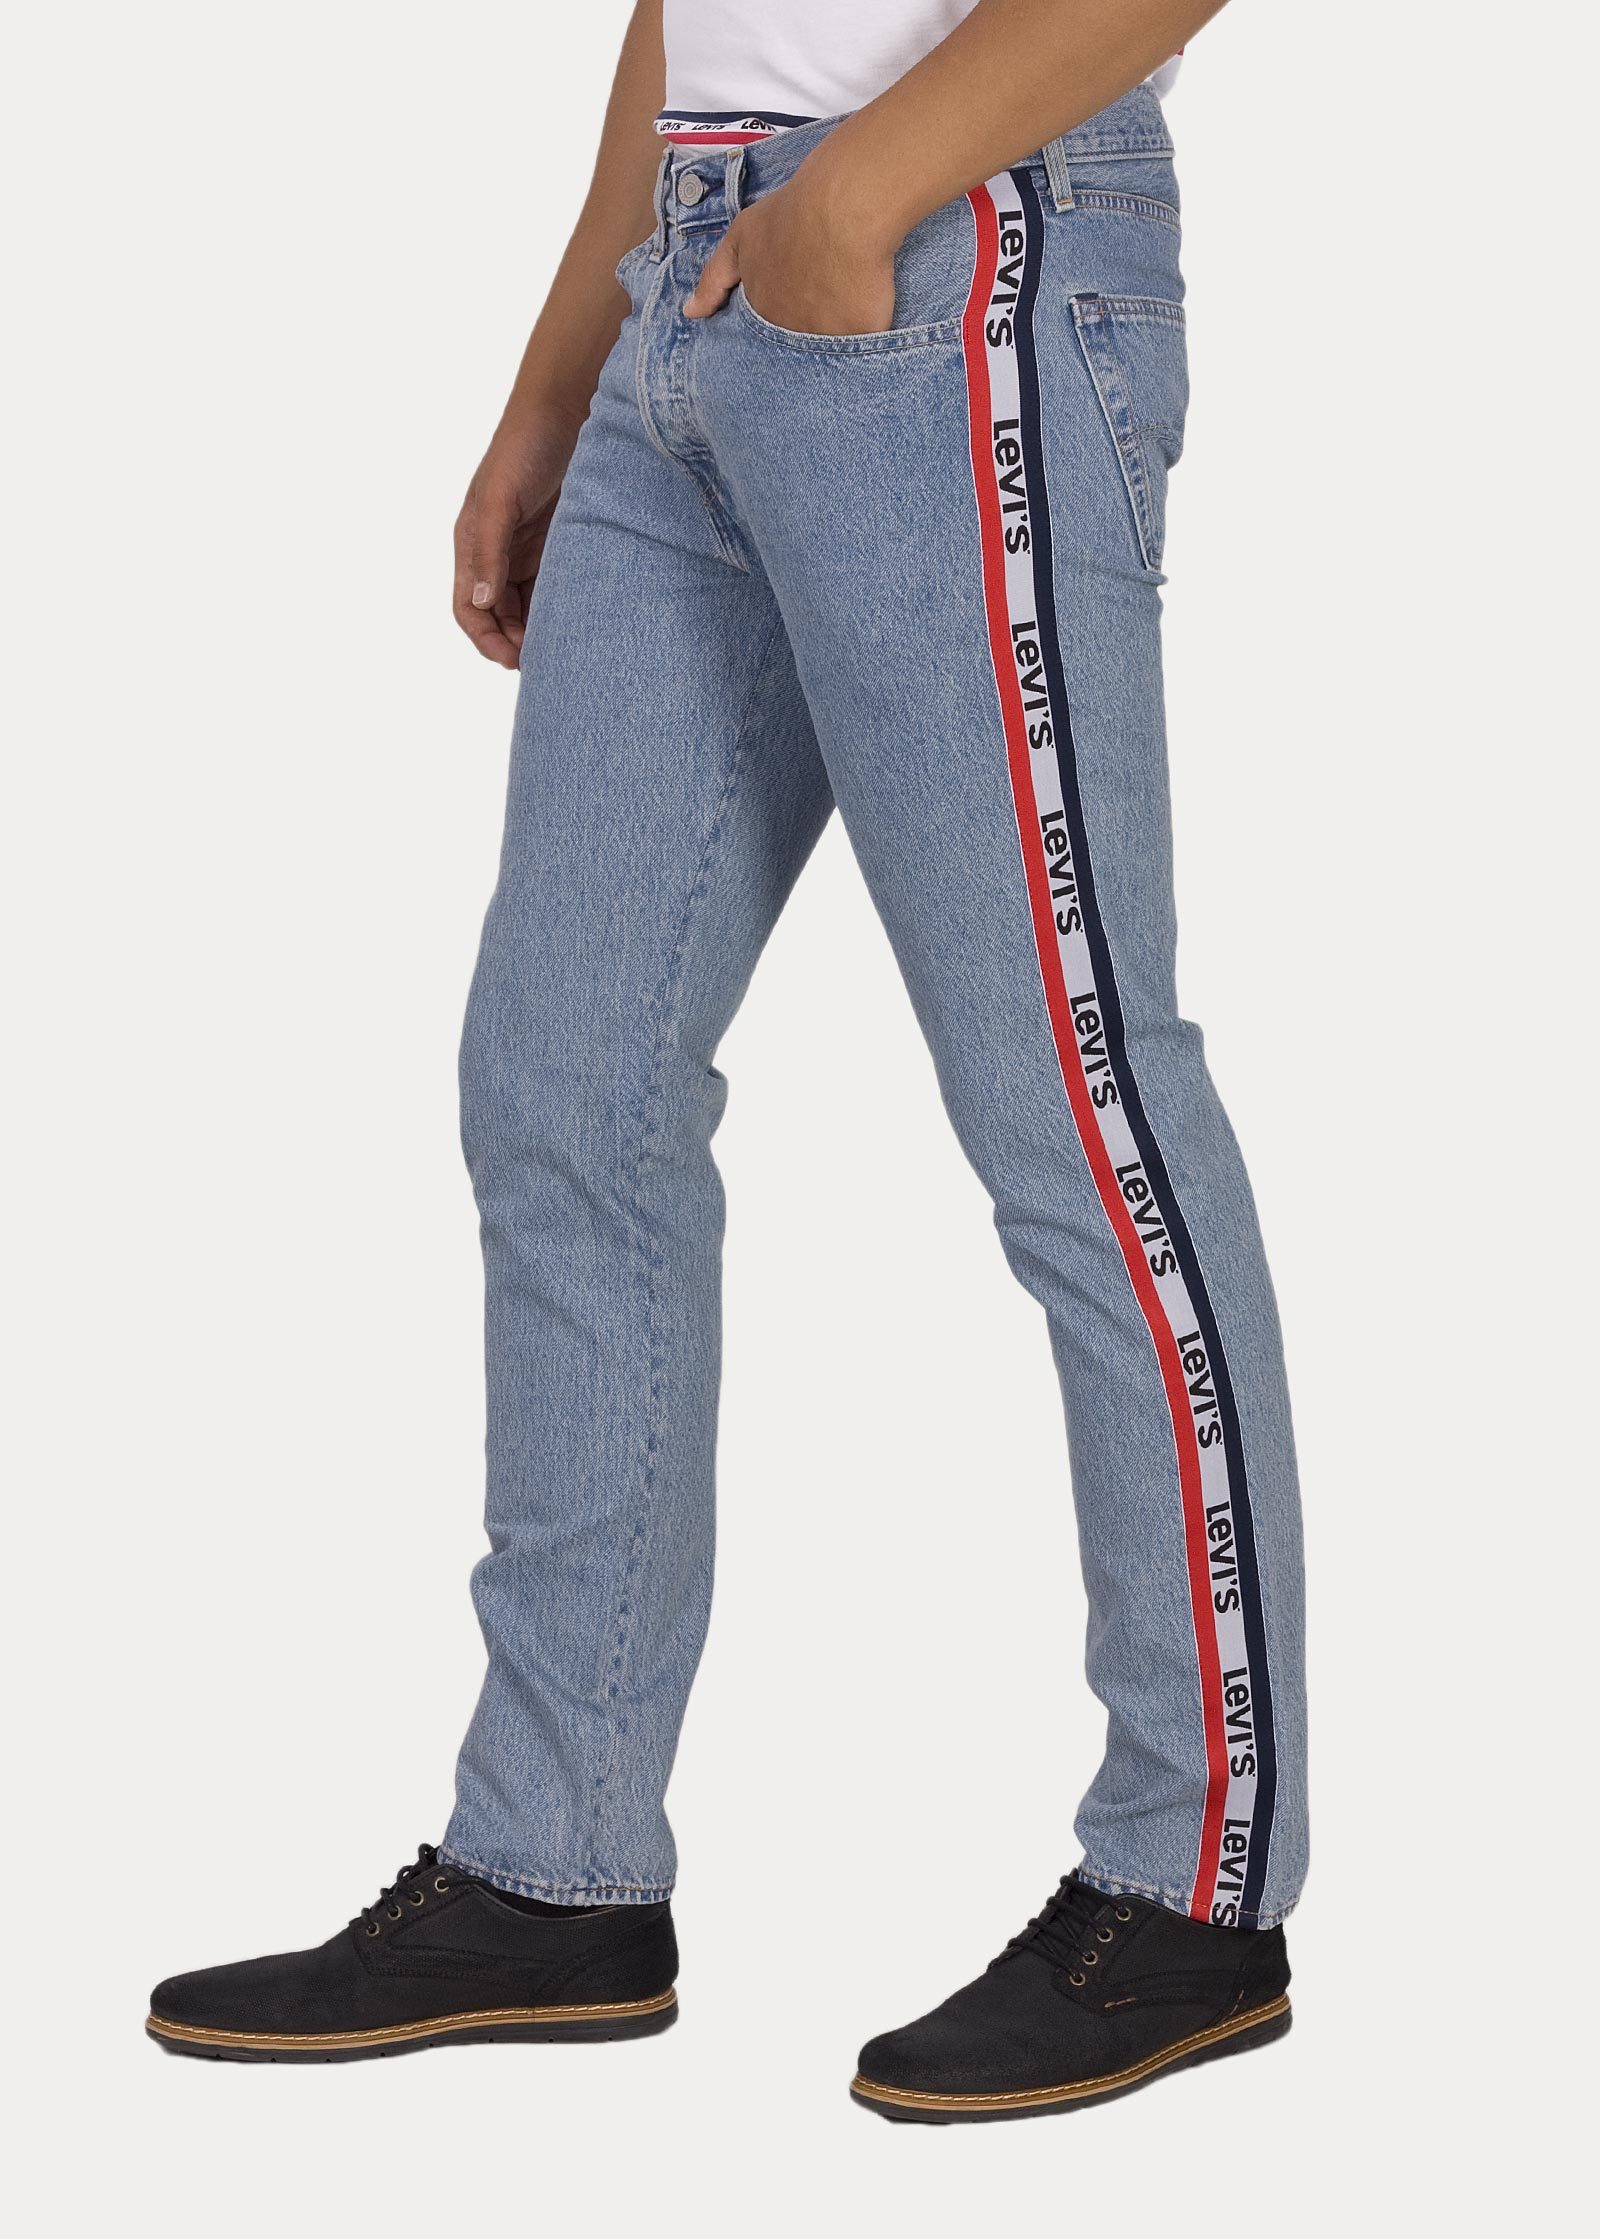 levis striped jeans mens